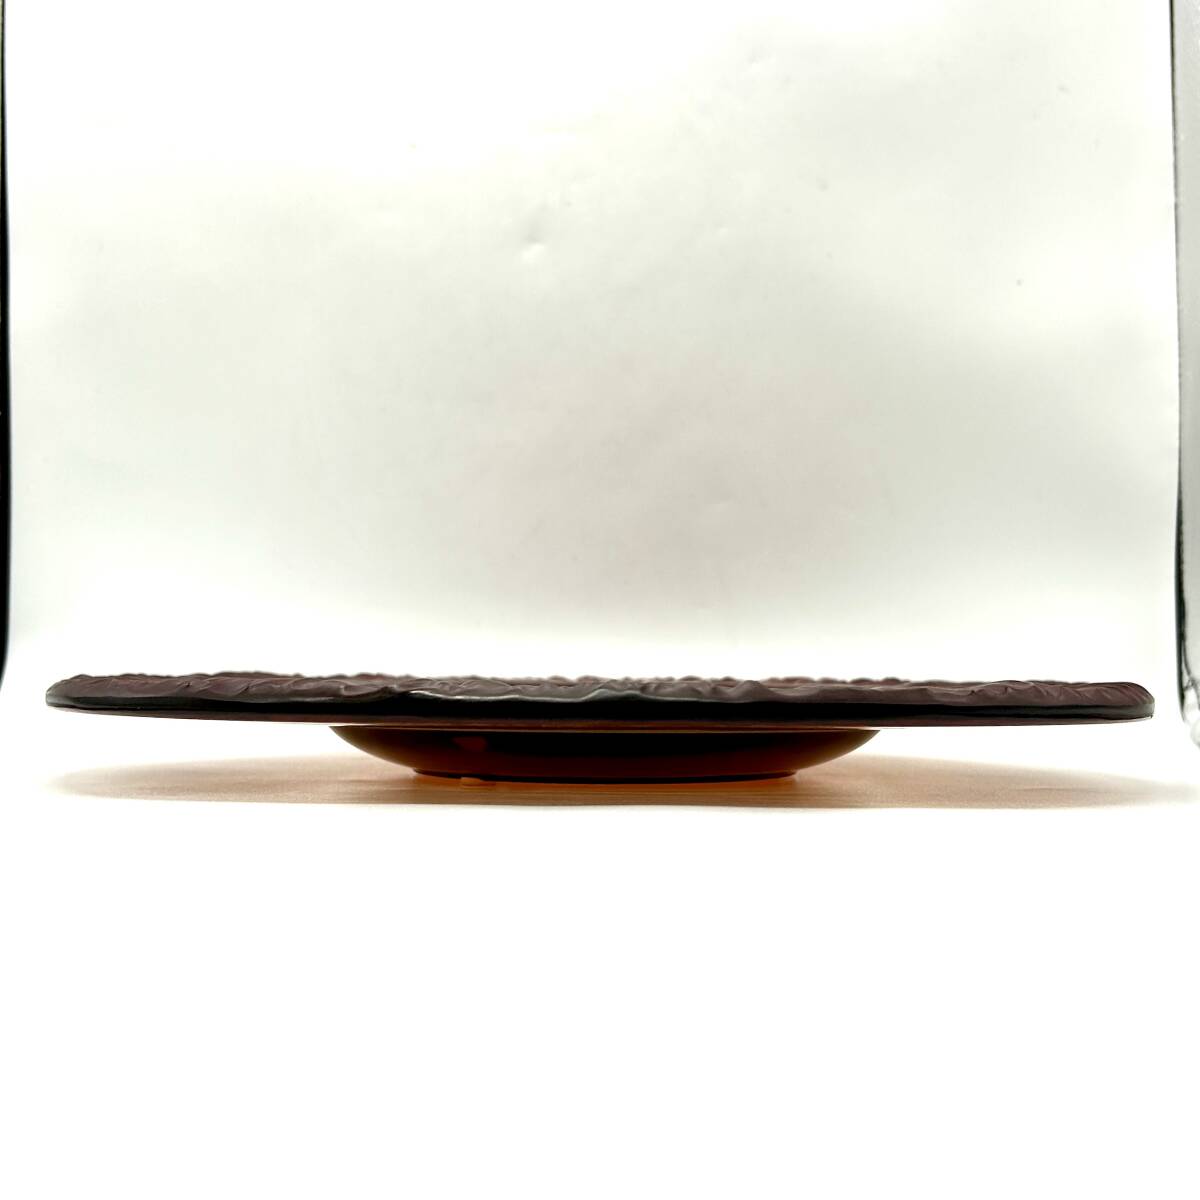 TS022■Rene Lalique ルネ ラリック ガラス製 プレート ガラスプレート 食器 皿 大皿 サイン 刻印あり ブランド 中古_画像10